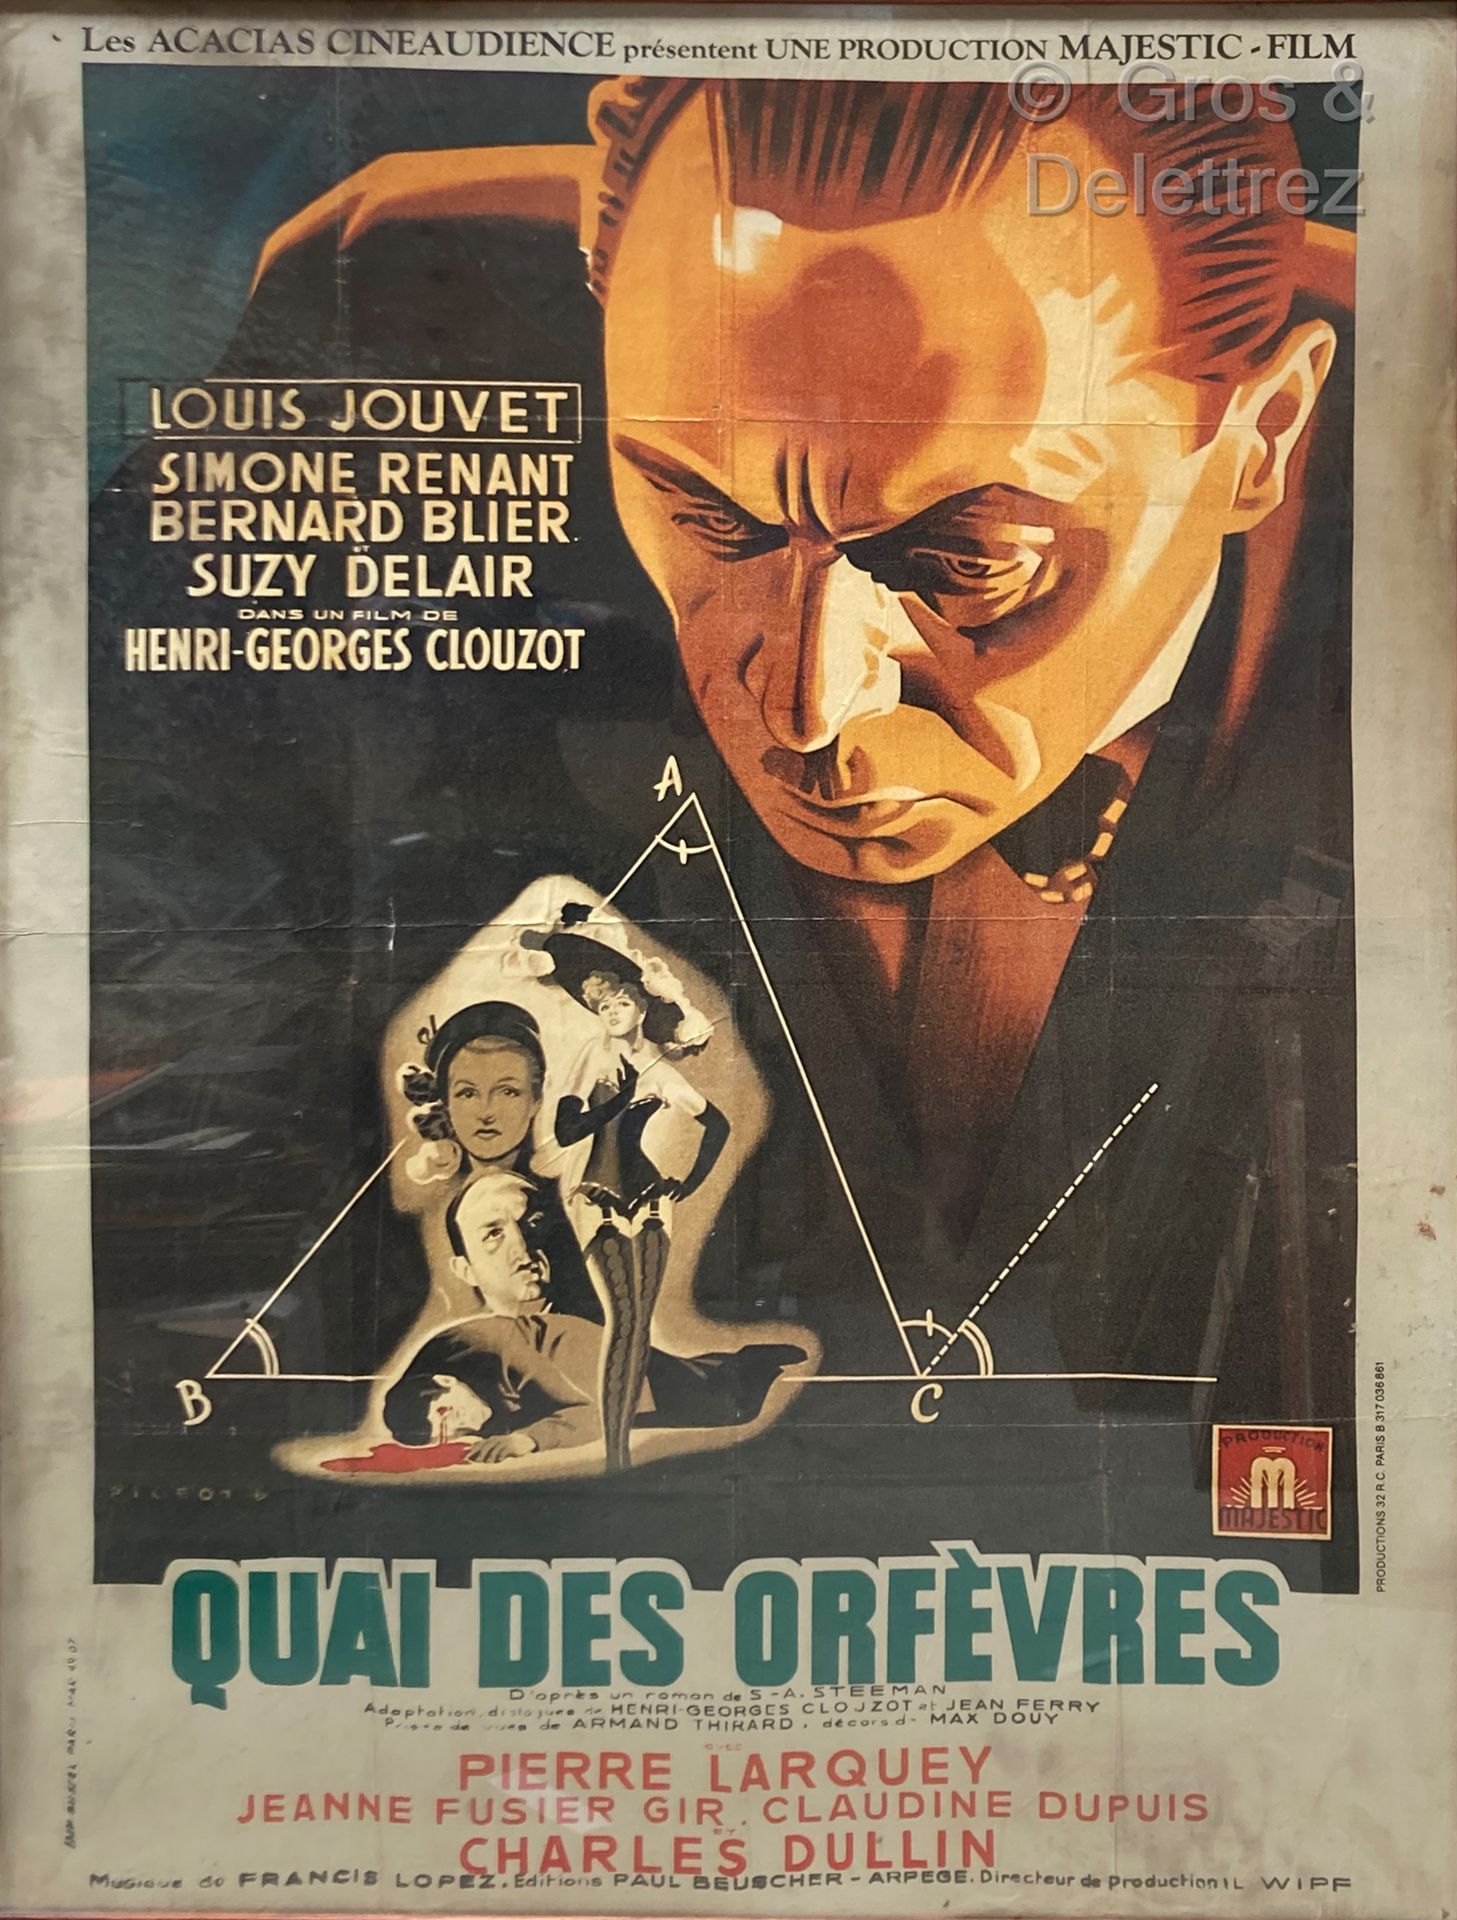 HENRI-GEORGES CLOUZOT Quai des orfevres

电影海报

158 x 117厘米（小裂缝），置于玻璃之下